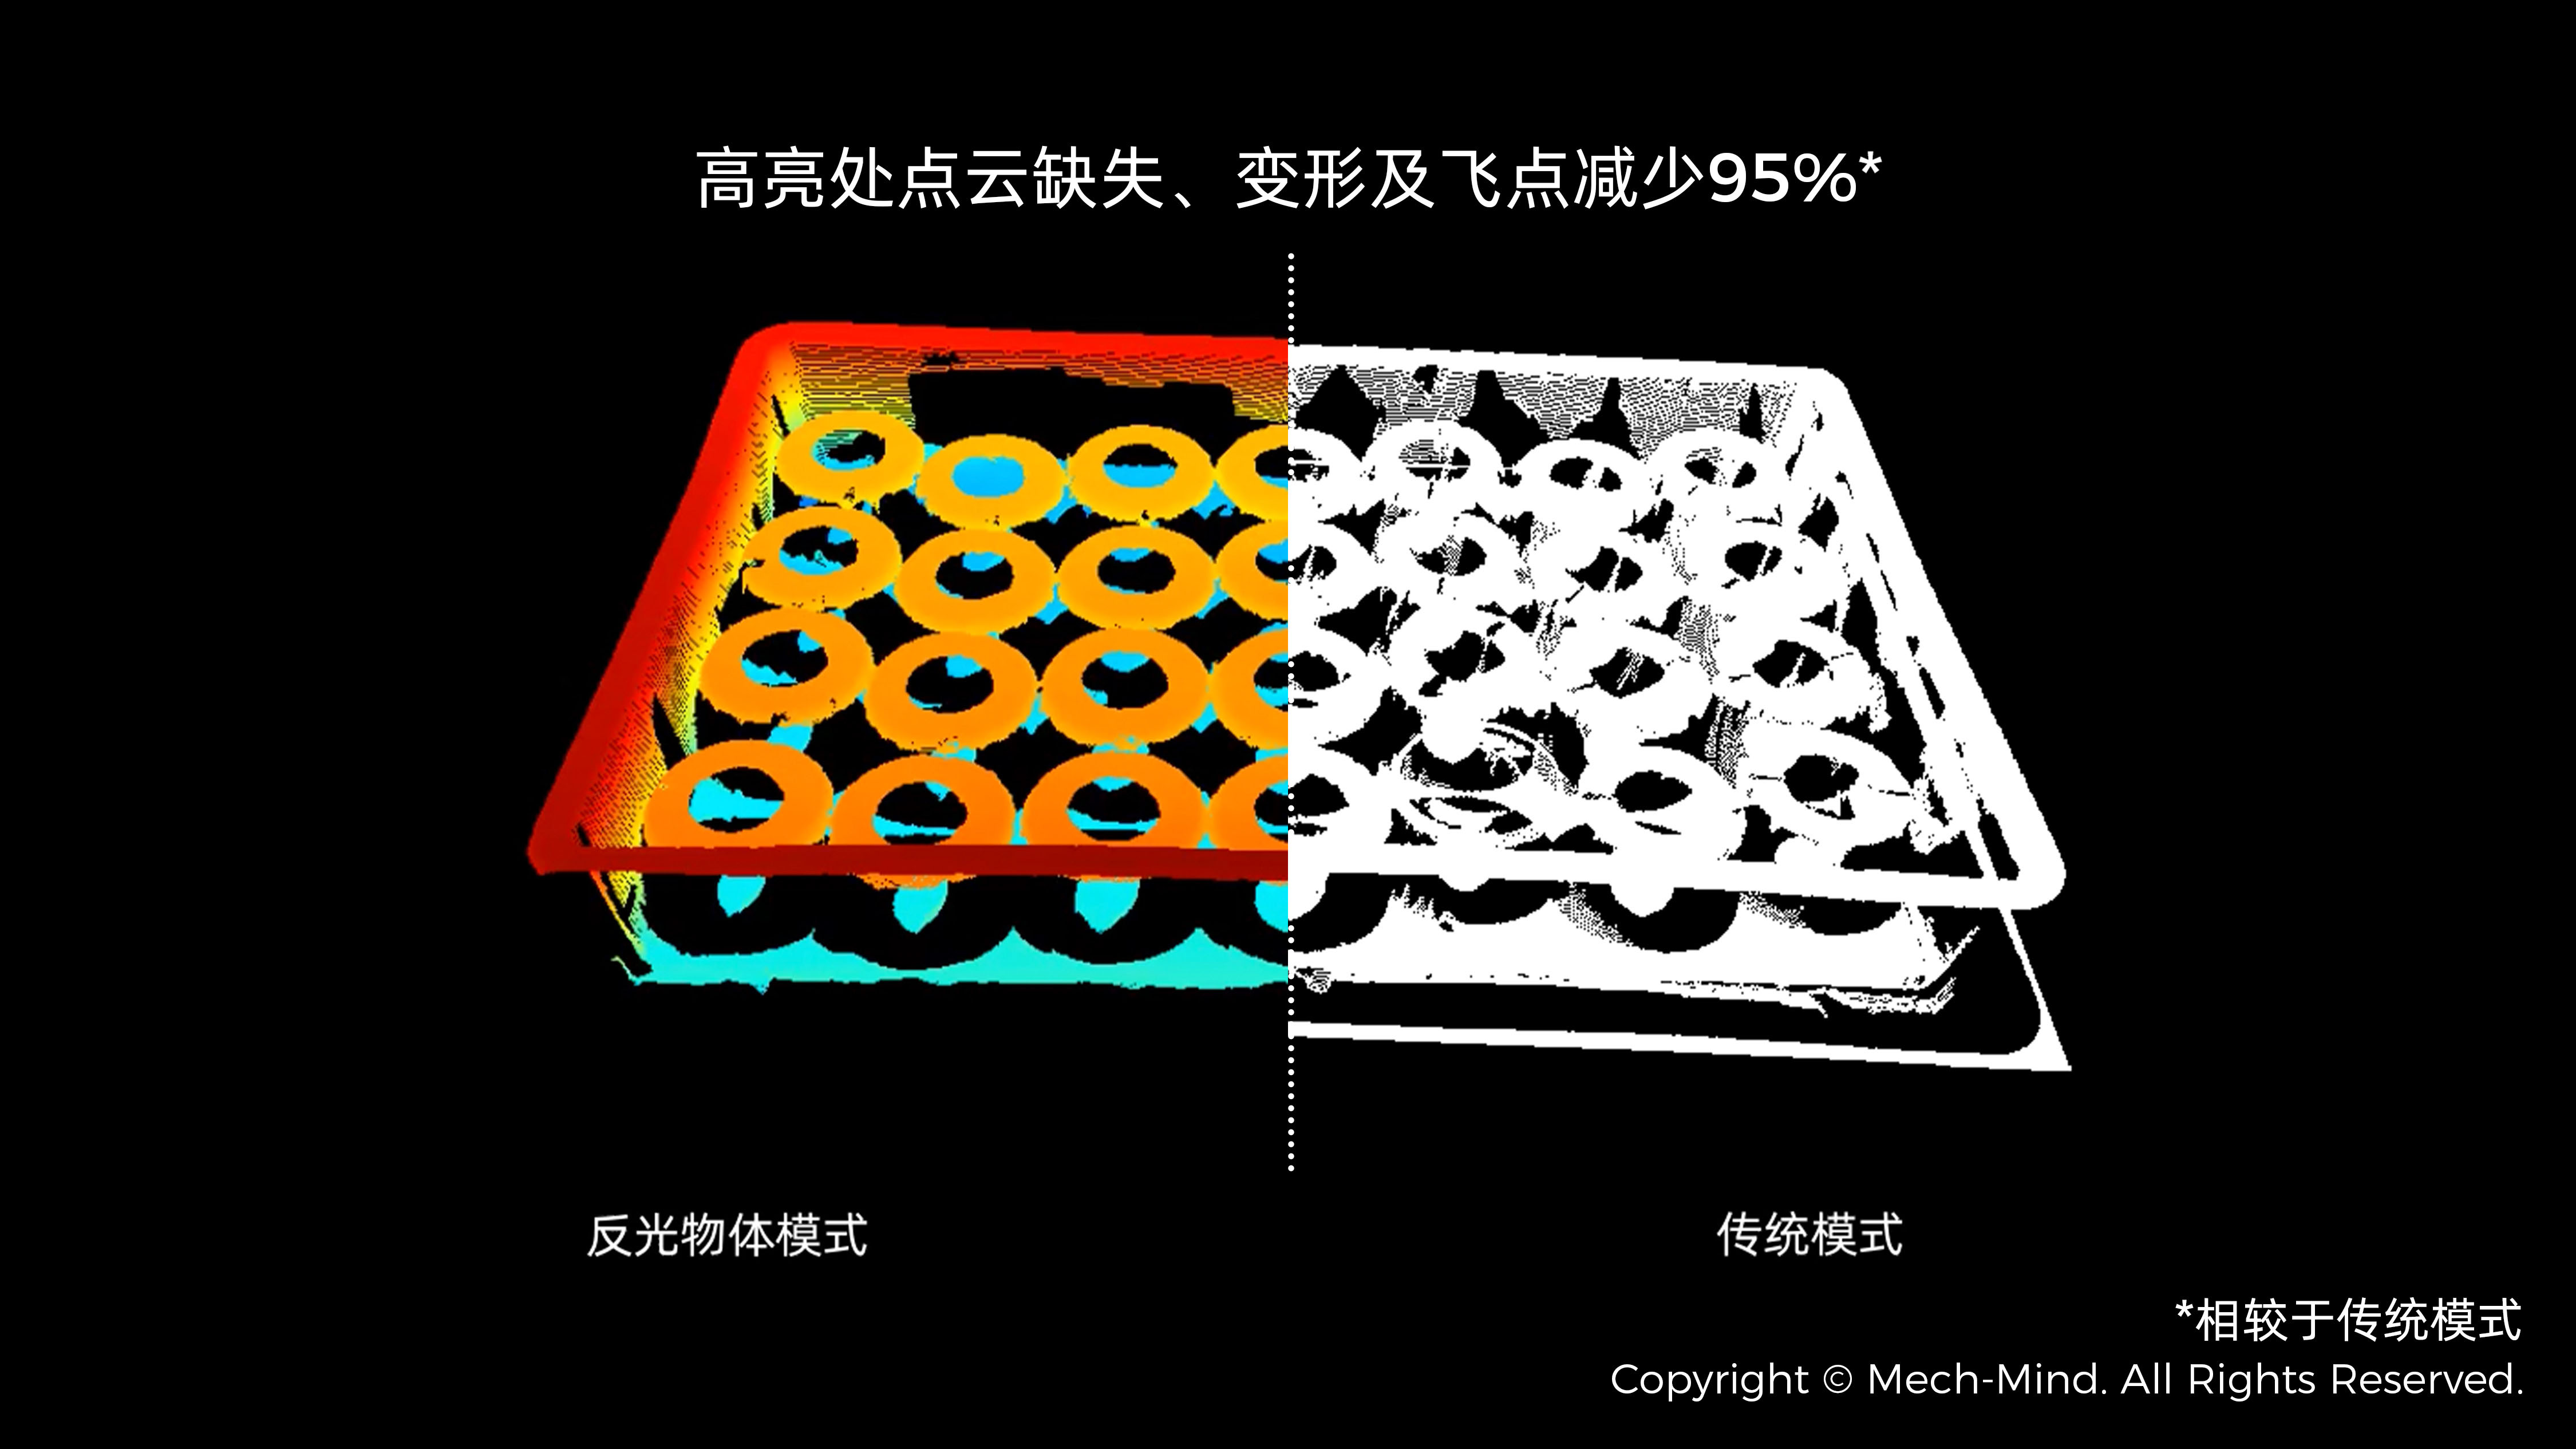 Mech-Eye 3D 相机反光物体成像能力大幅提升，点云准确度提升90%